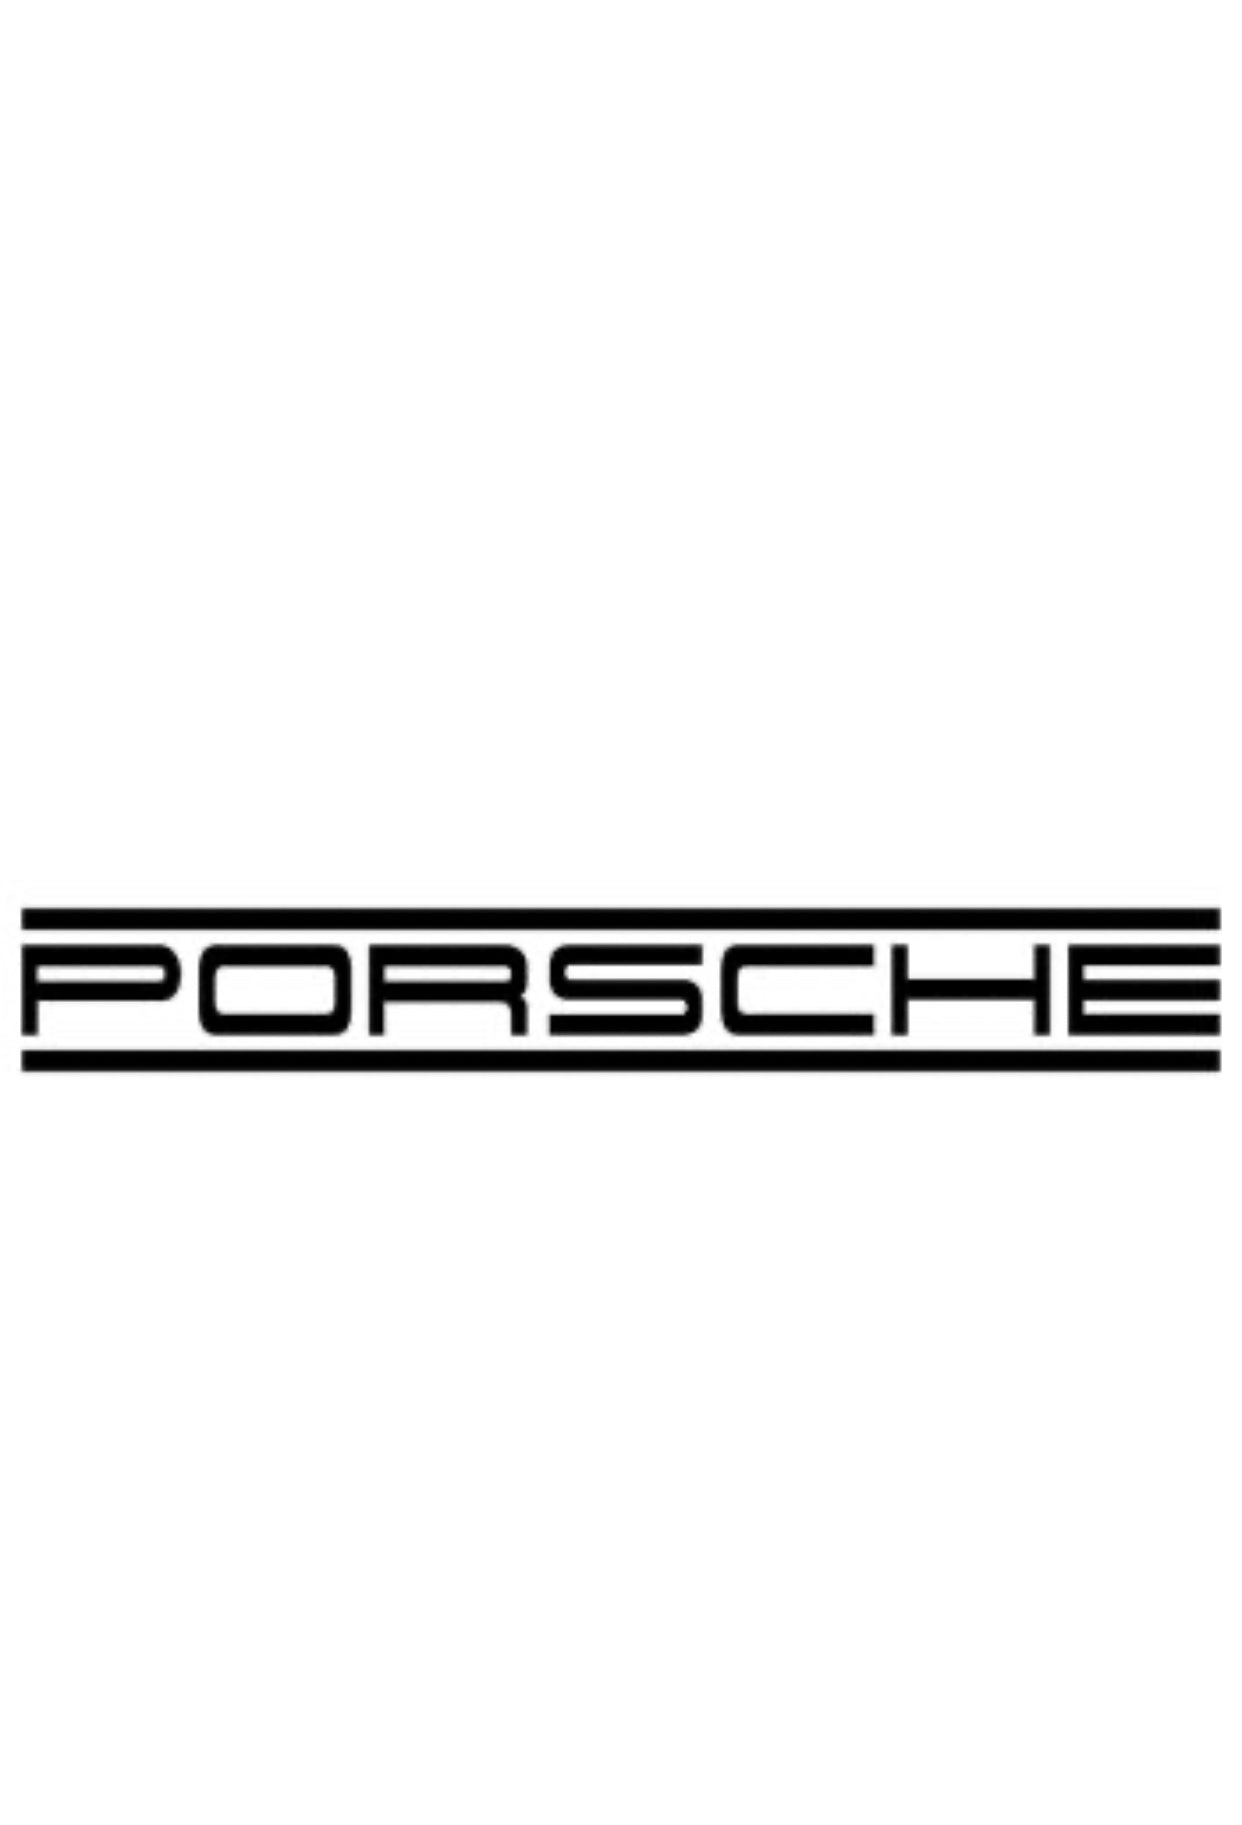 Porsche Taycan 9J1 Luftfahrwerk tieferlegen